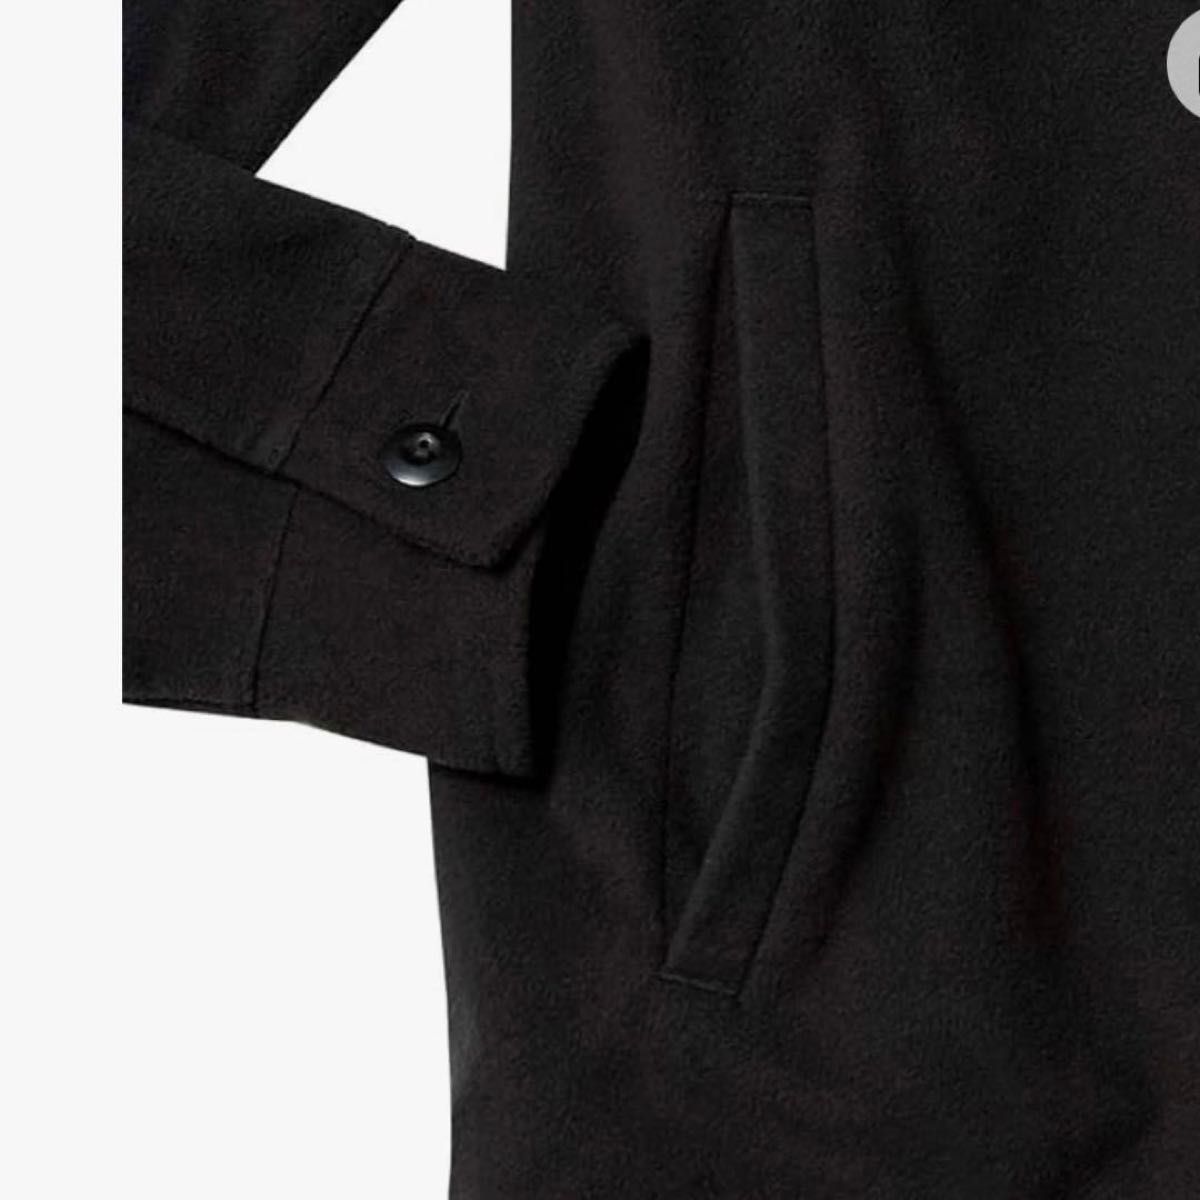 メンズ トップス フリース ジャケット ブラック 長袖 上着 厚手 シャツ ユニセックス レディース 男女兼用 シンプル アウター